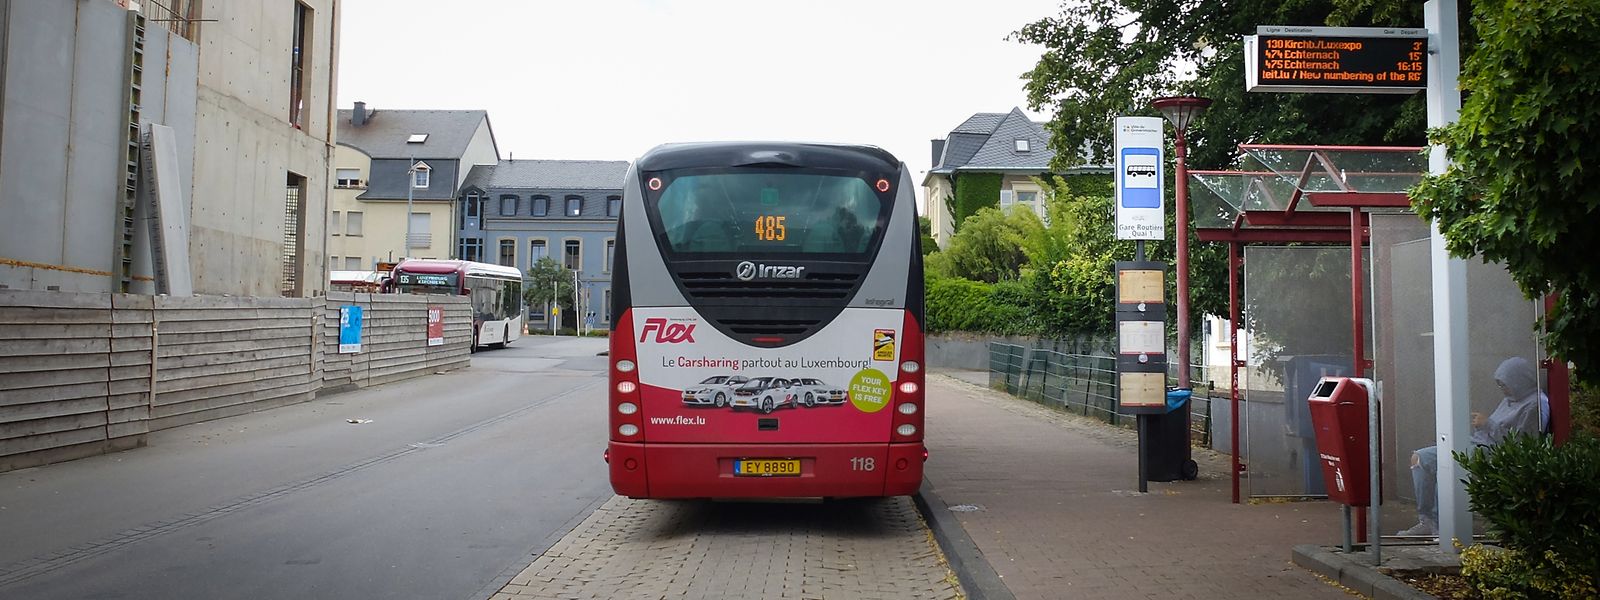 Die Gemeinde Grevenmacher plant, an der Bushaltestelle am Kulturzentrum eine sanitäre Anlage für Busfahrer zu installieren.